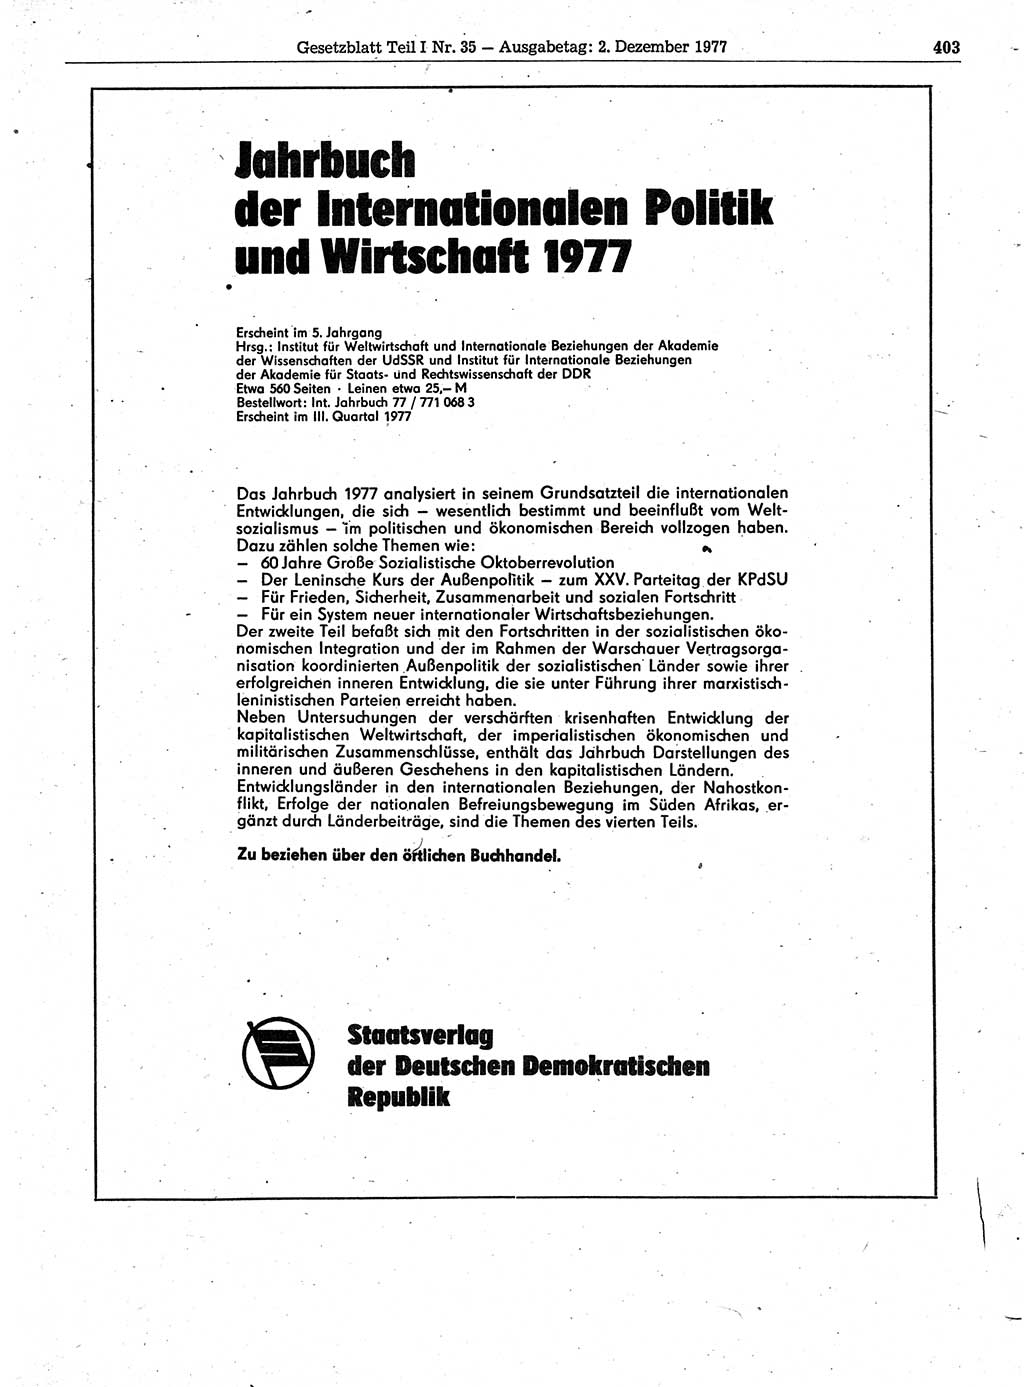 Gesetzblatt (GBl.) der Deutschen Demokratischen Republik (DDR) Teil Ⅰ 1977, Seite 403 (GBl. DDR Ⅰ 1977, S. 403)